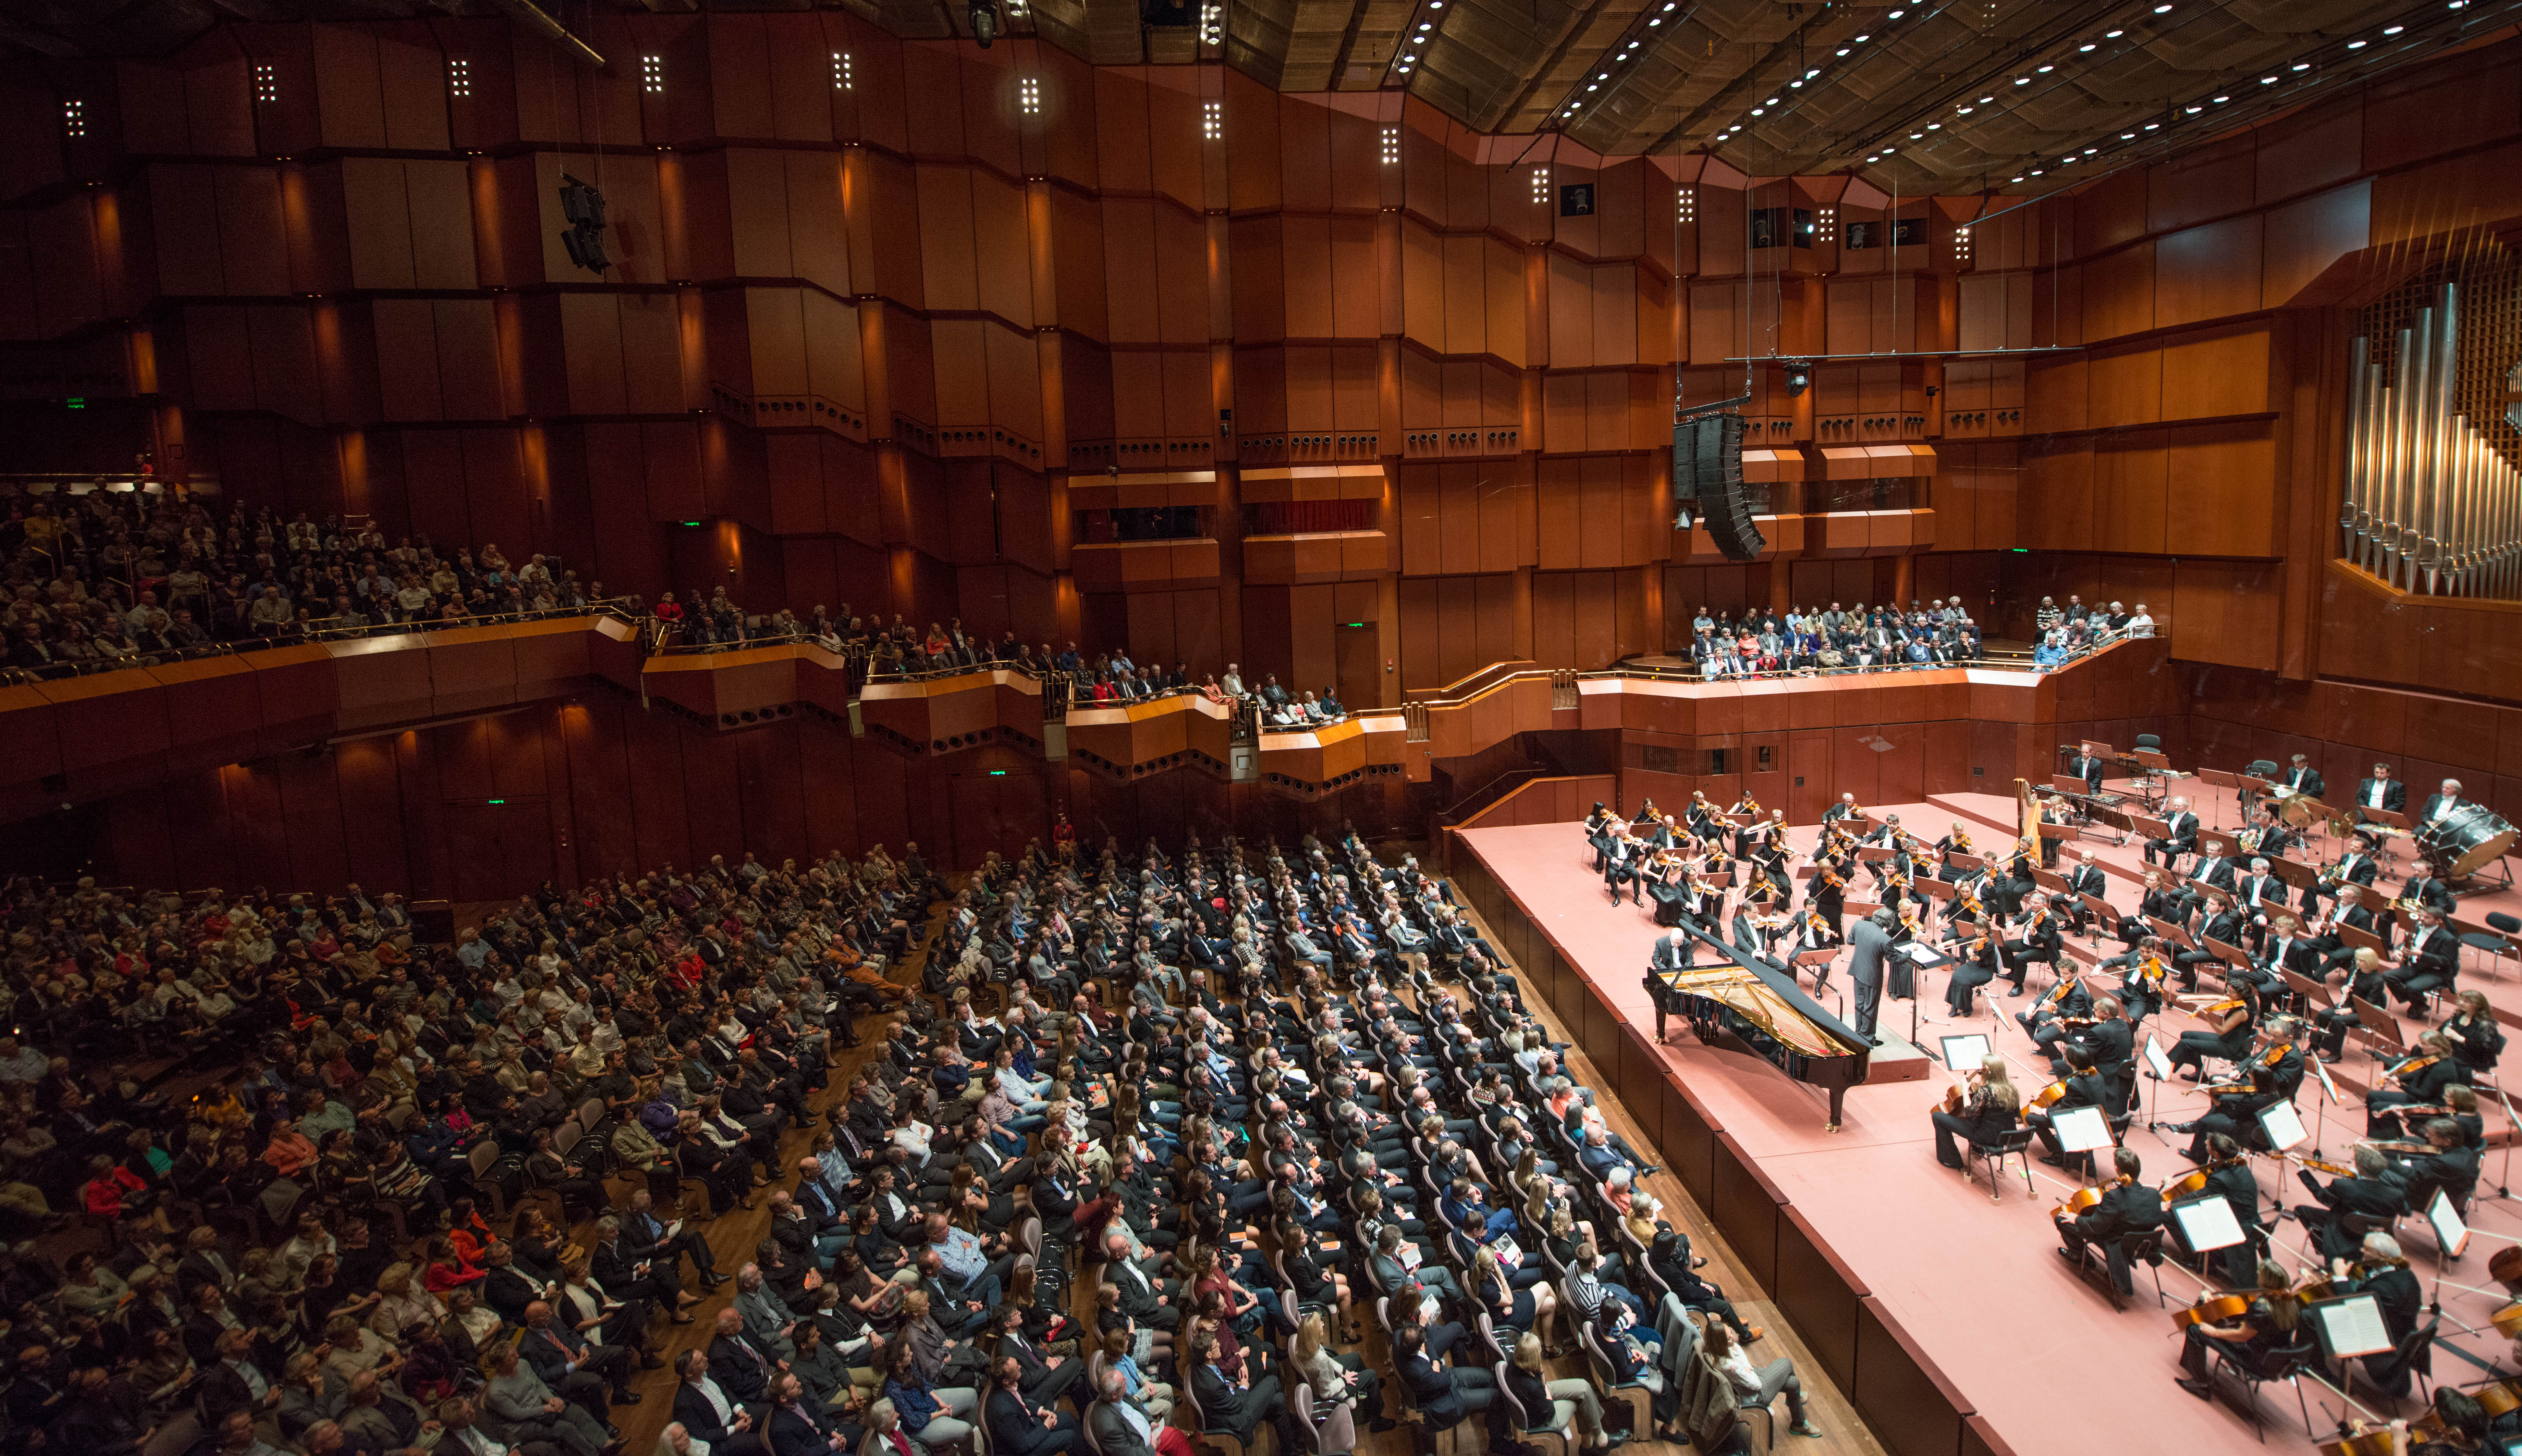 London Philharmonic Orchestra in der Alten Oper Frankfurt 